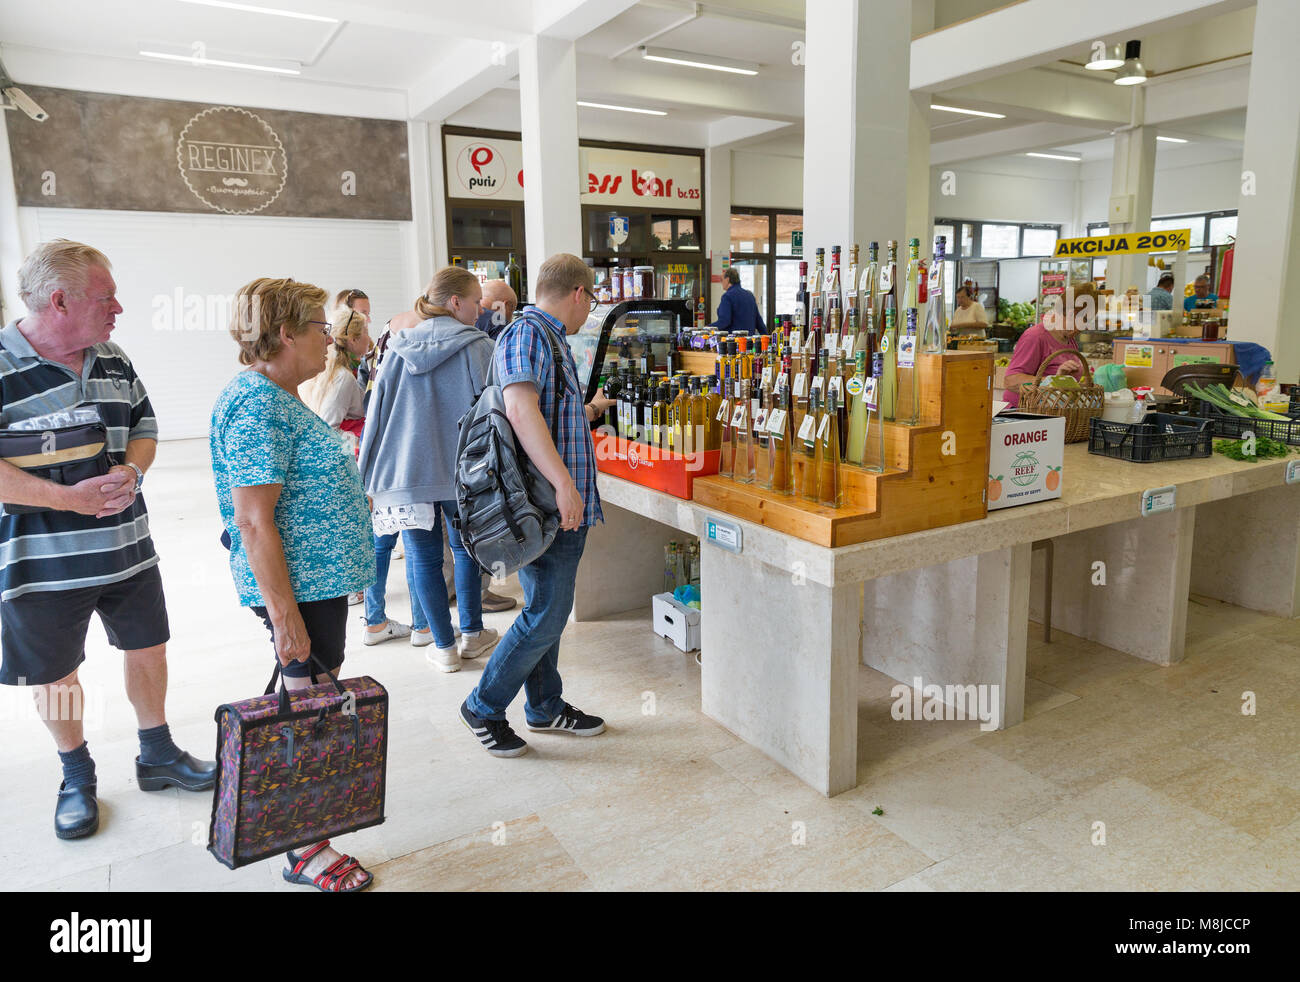 POREC, Croatie - le 21 septembre 2017 : Les gens achètent de l'huile d'olive et de l'alcool local des boissons sur le marché. Porec est une ville près de 2 000 ans et municipaux Banque D'Images